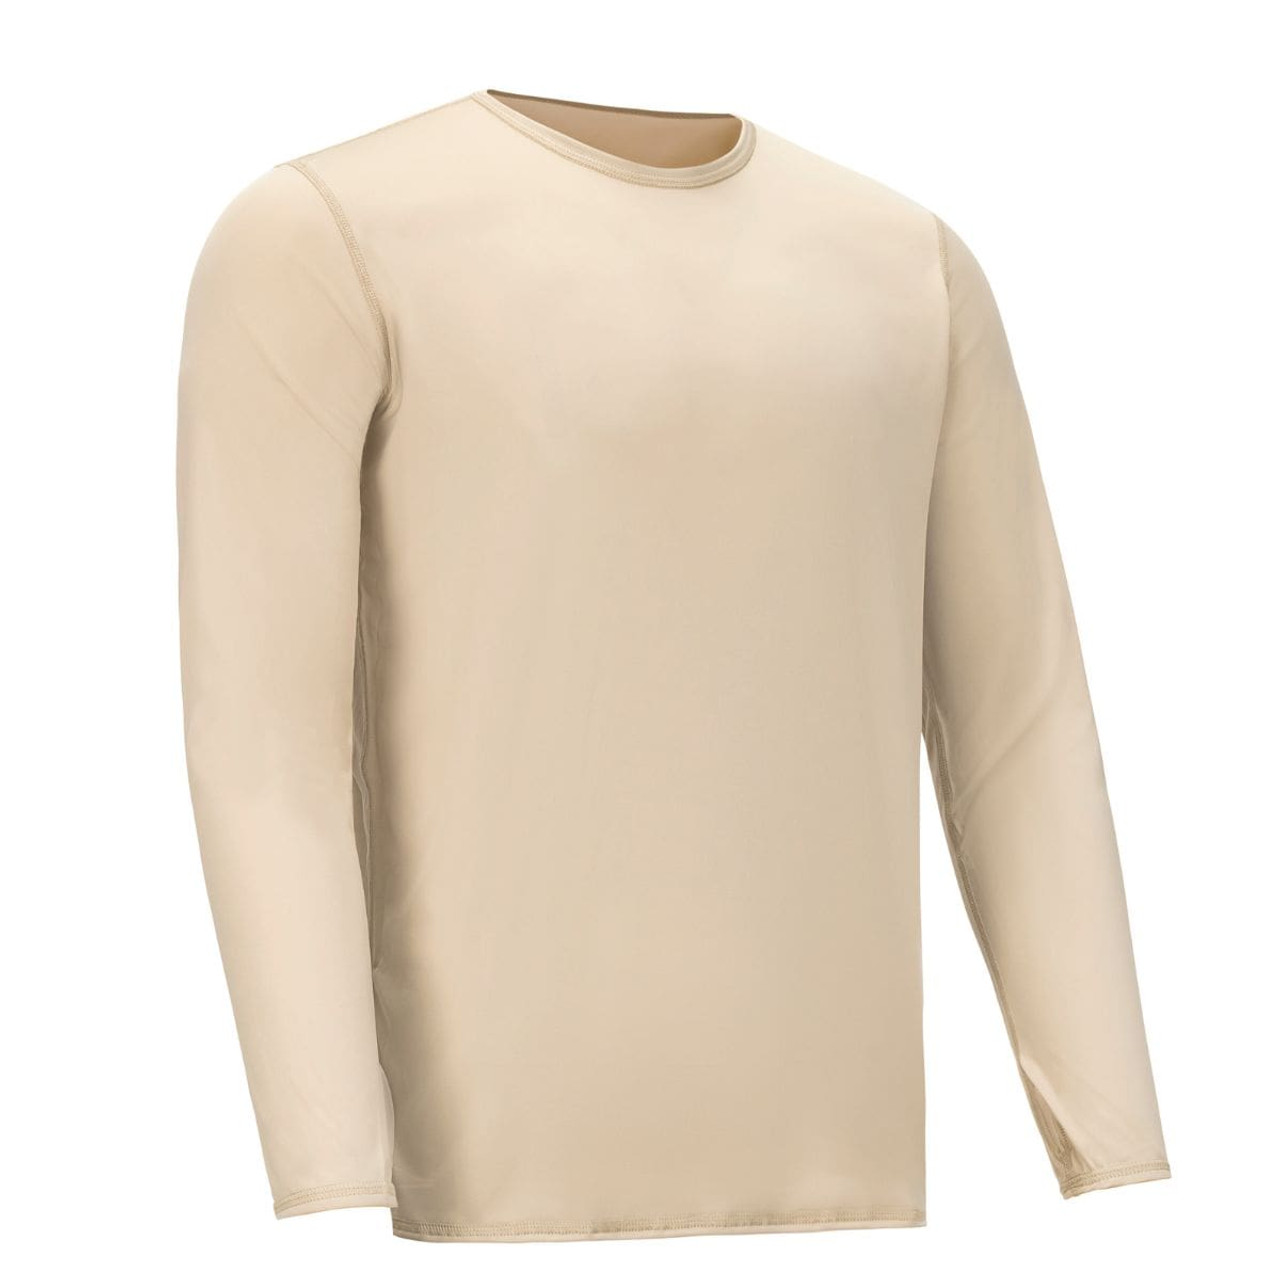 Gen 3 Level 1 X-Large Regular Sand Tan Silk Weight Shirt Military